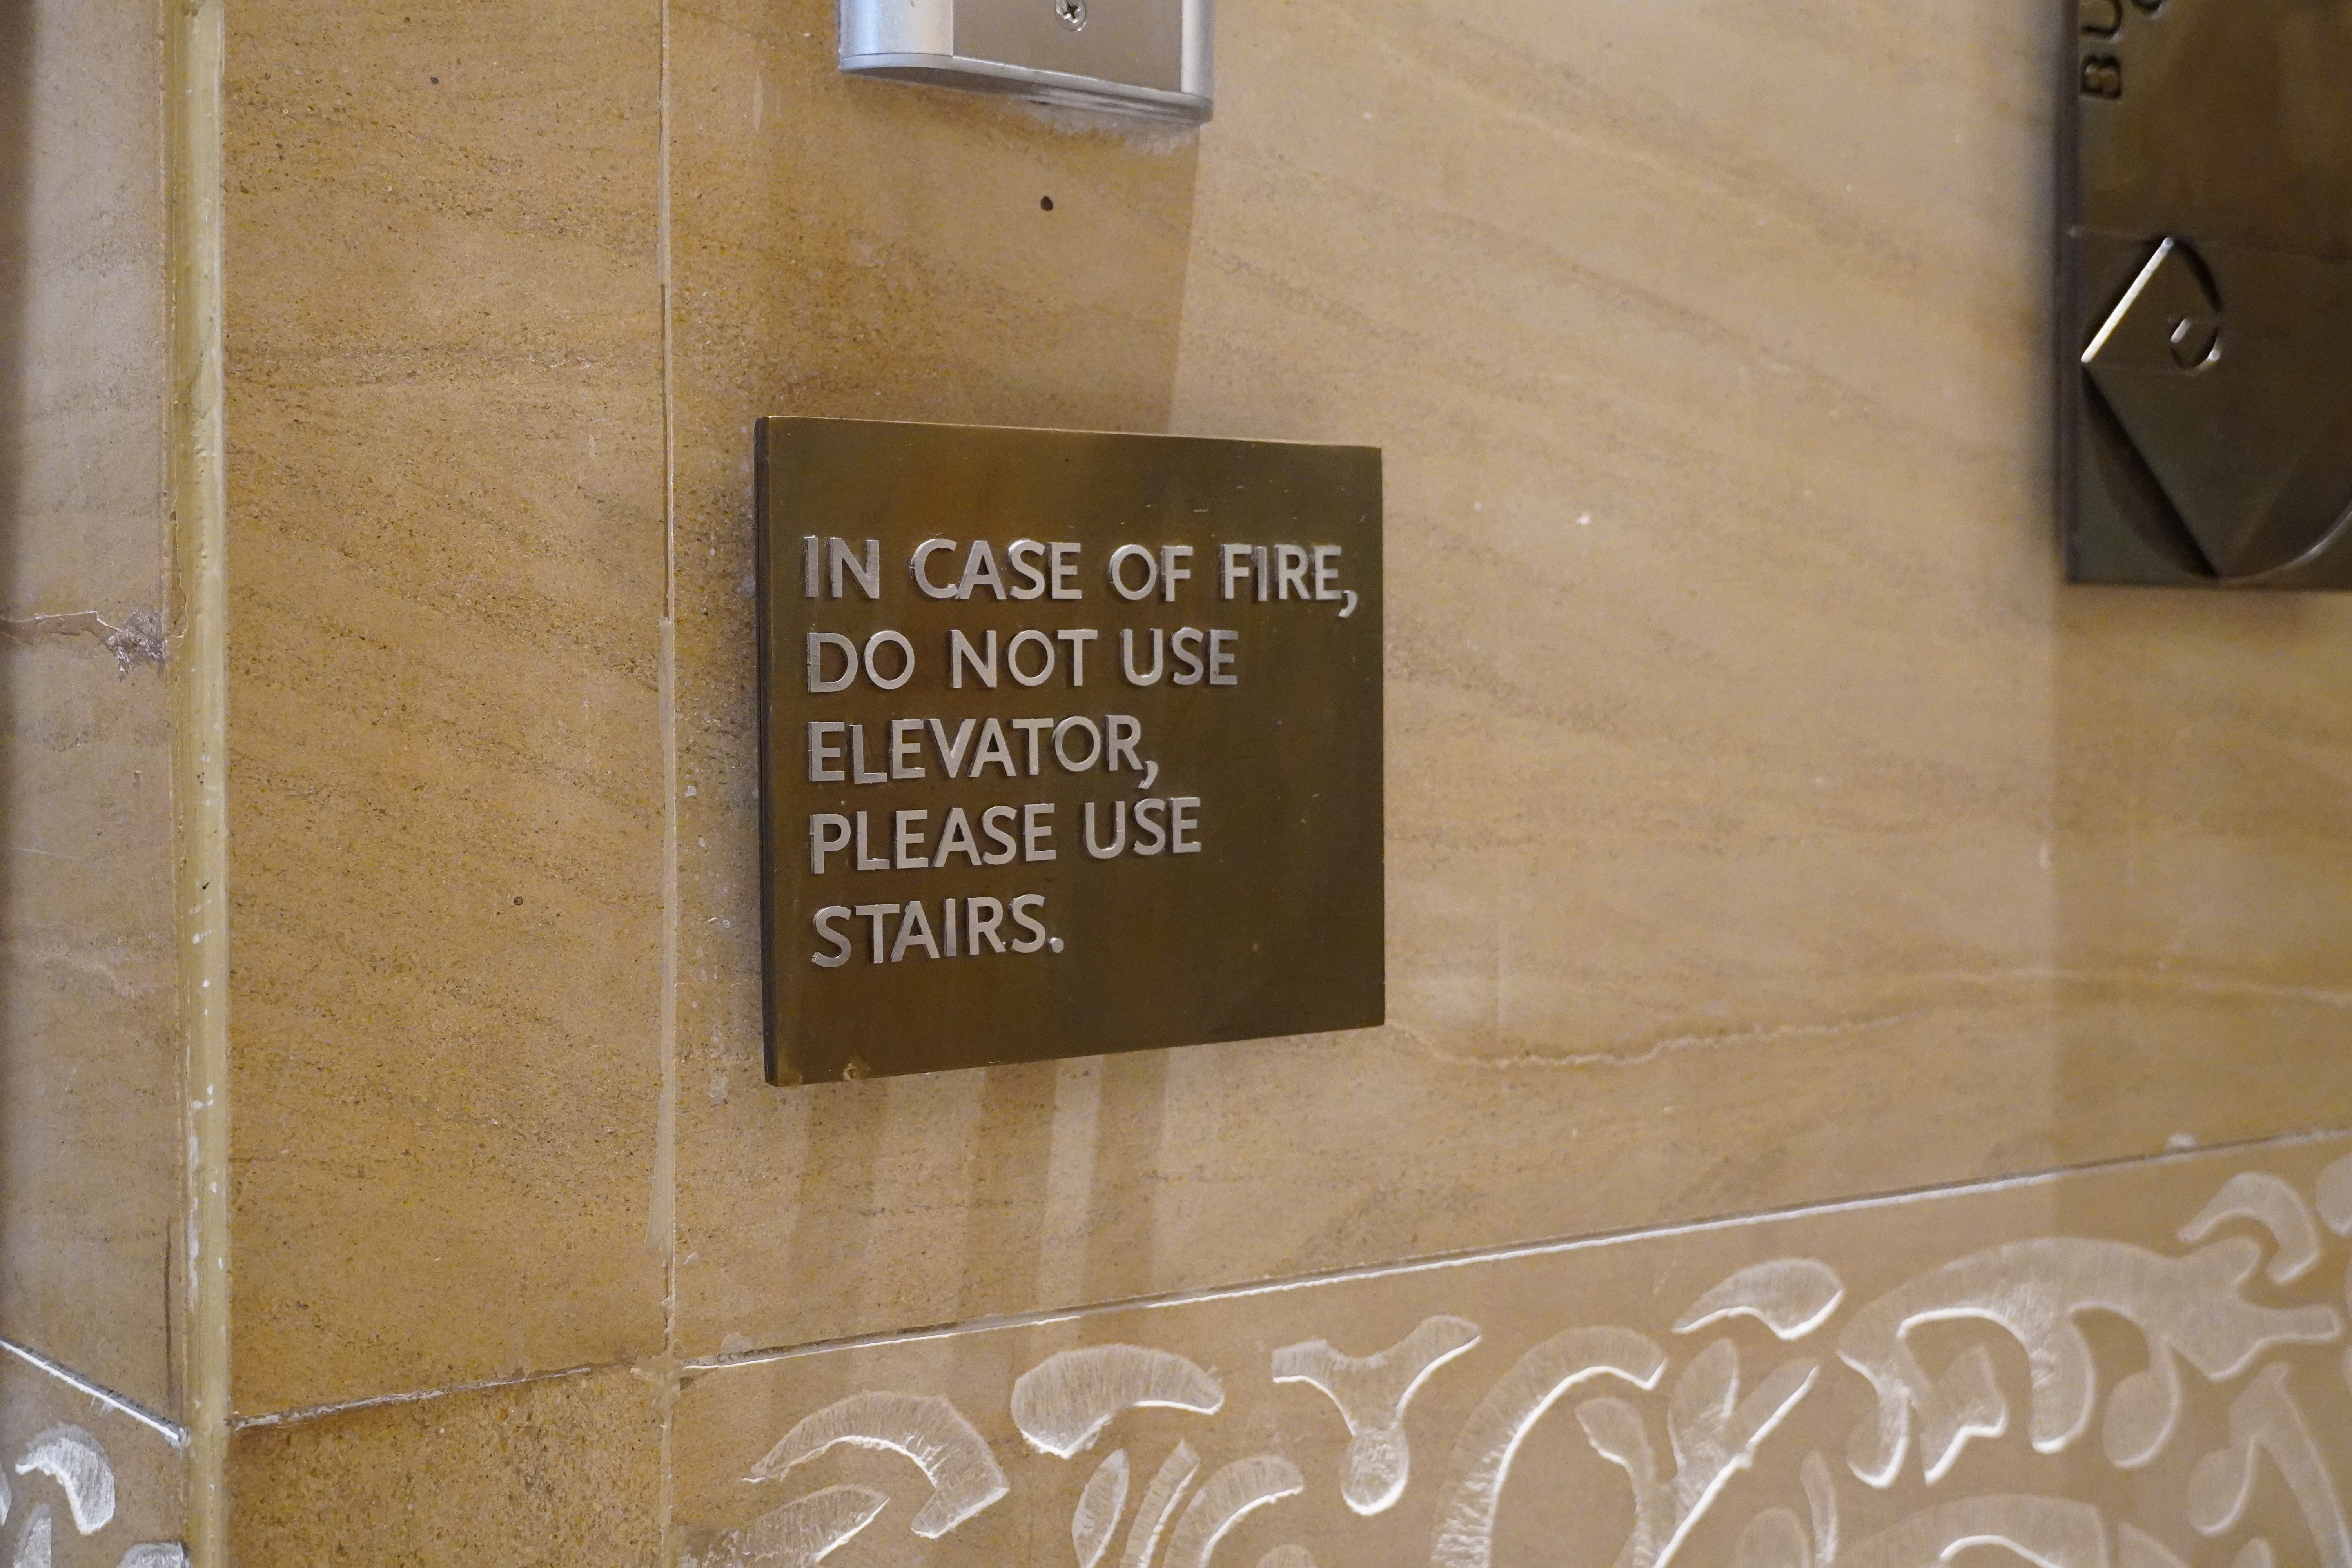 1. Fire escape route